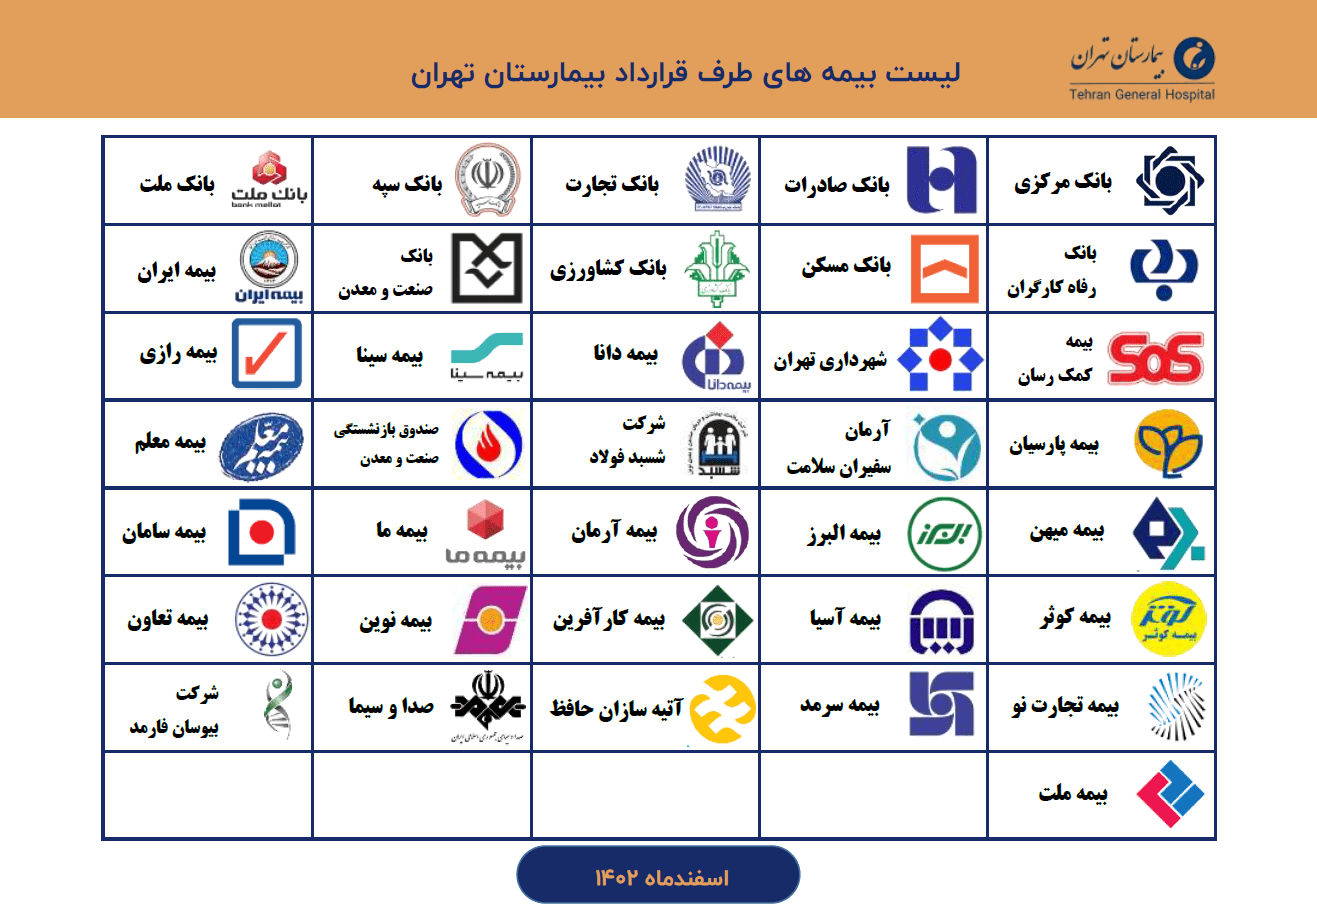 لیست بیمه های بیمارستان تهران-اسفند1402